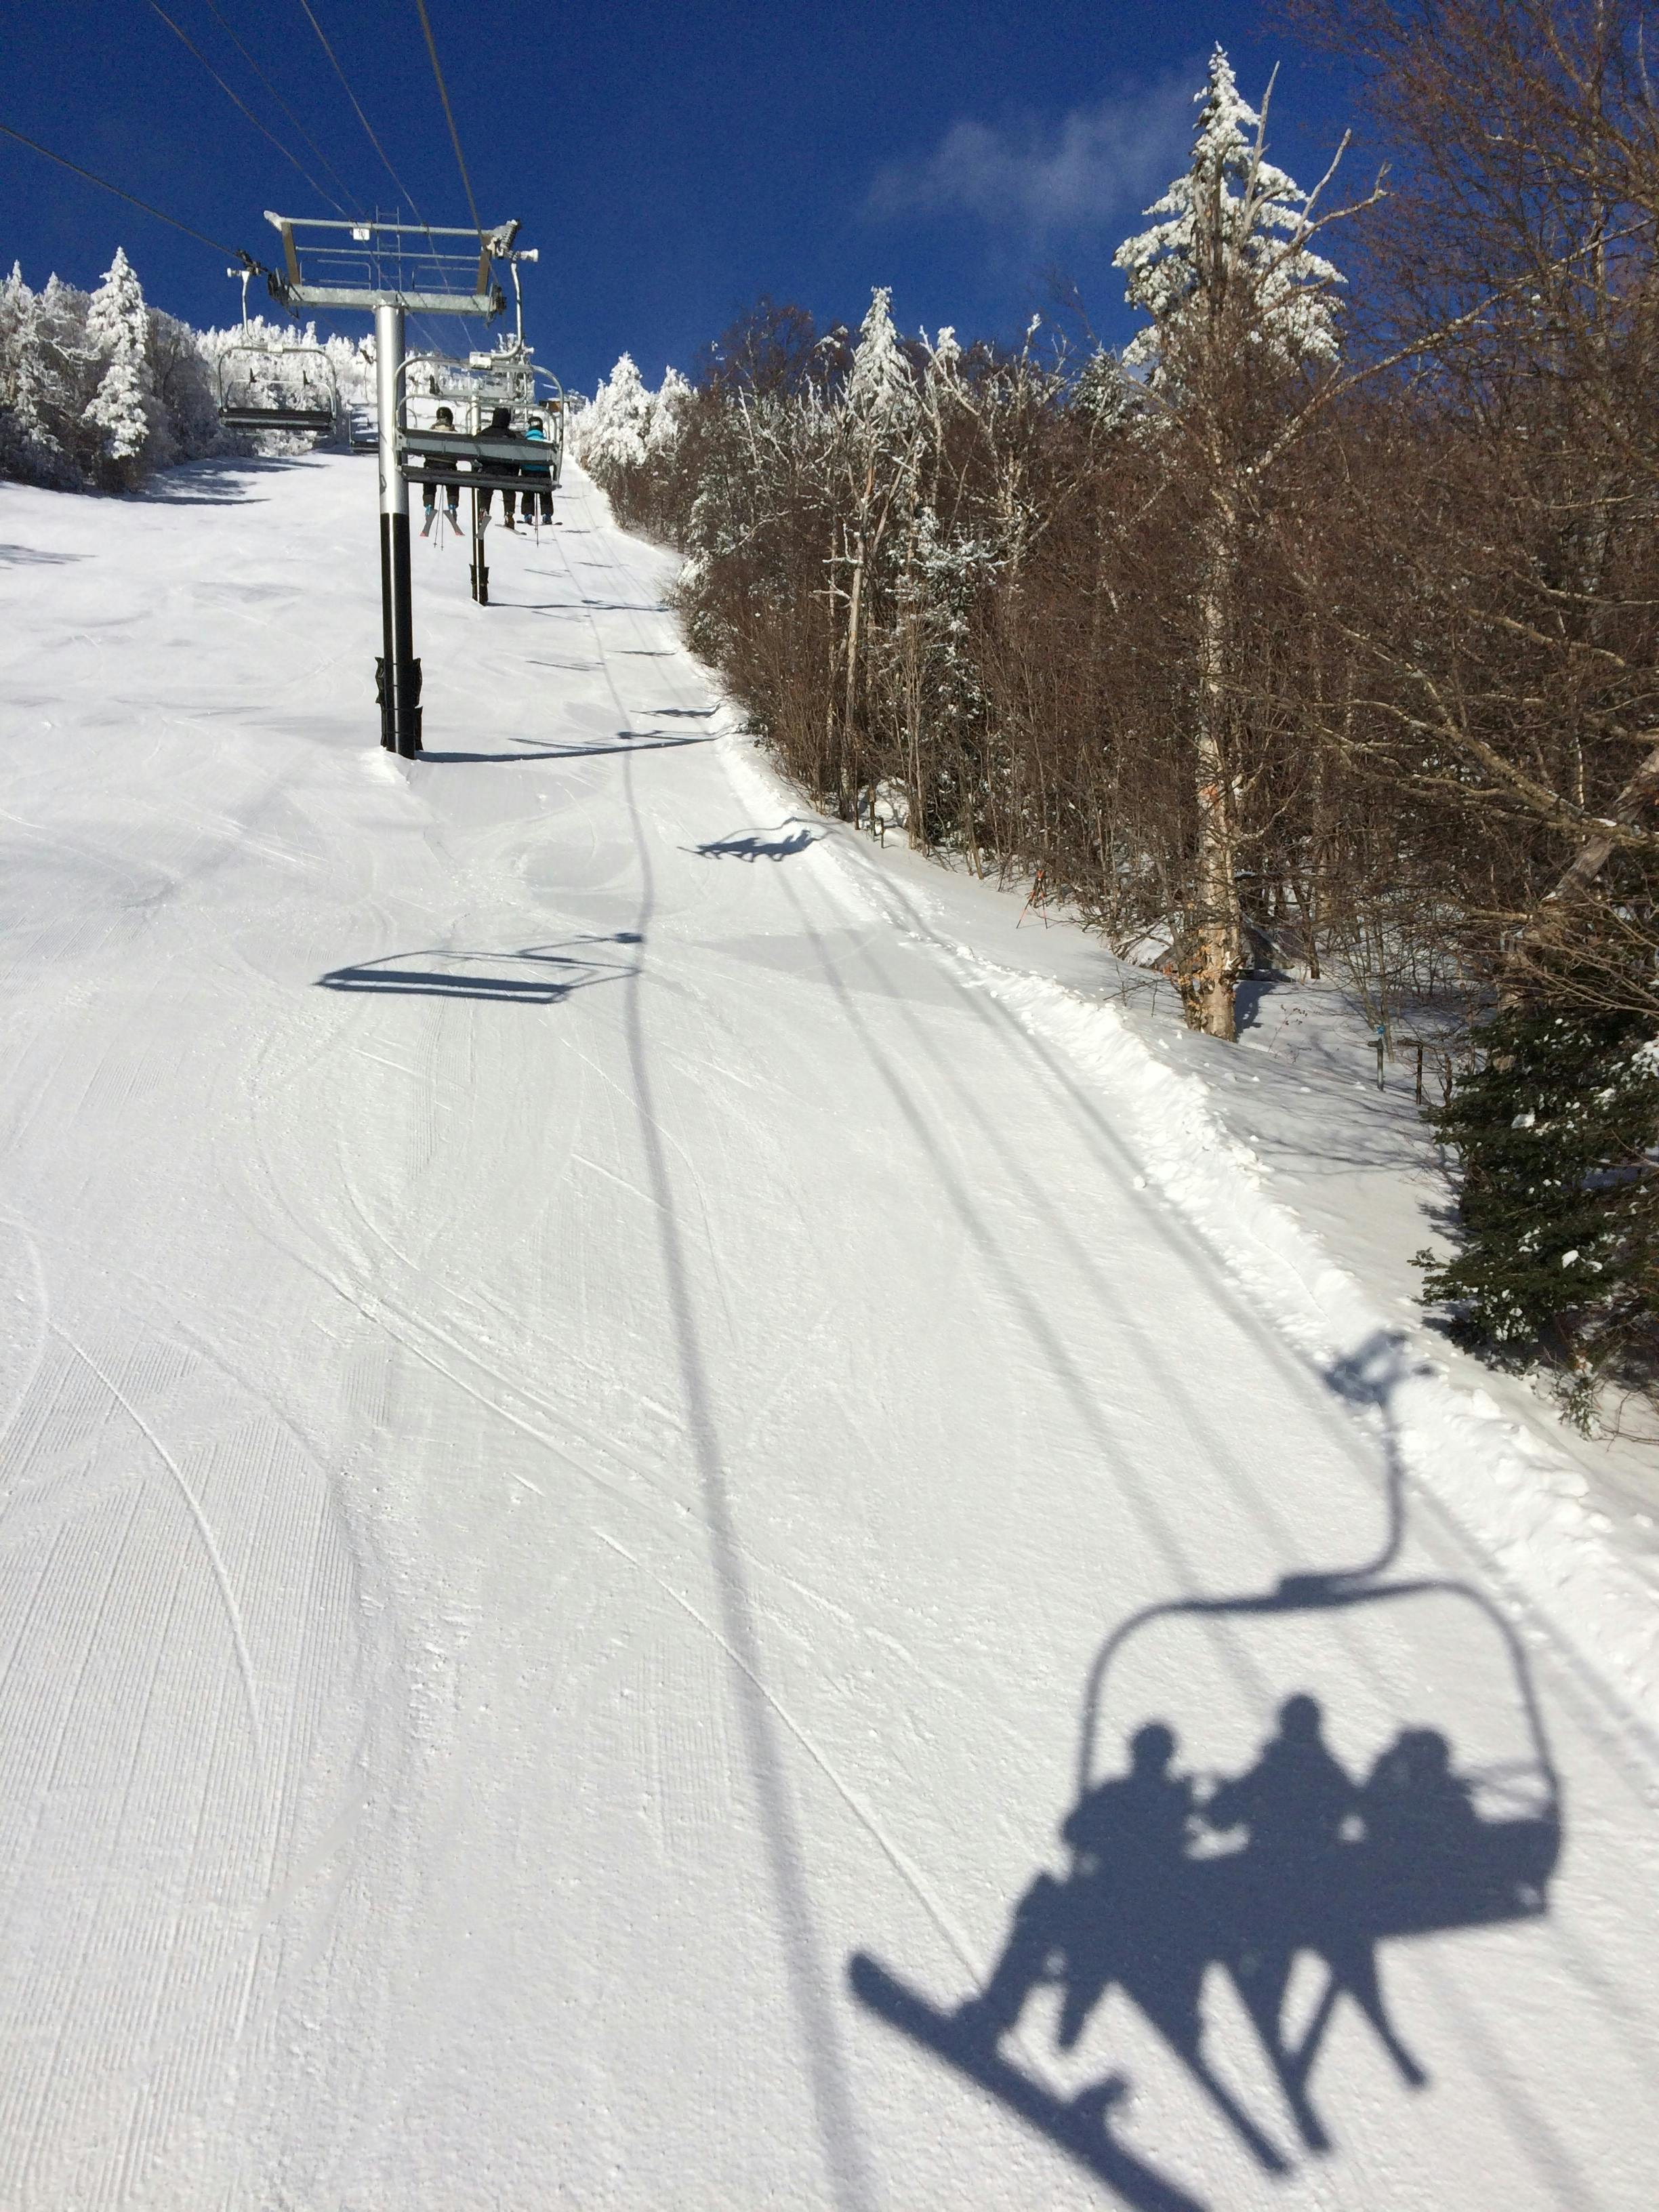 Free stock photo of ski lift, skiing